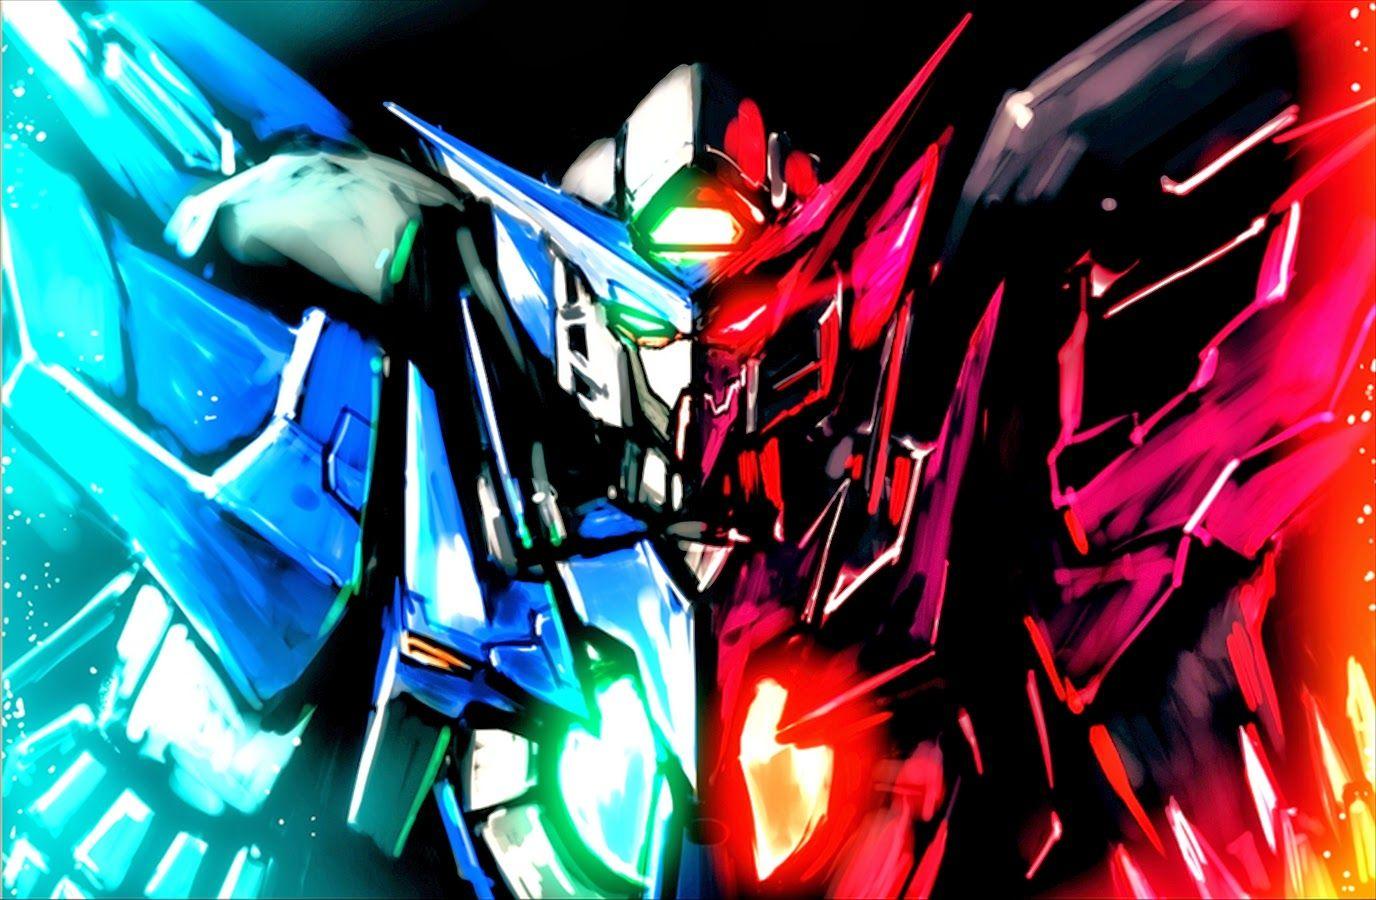 Gundam 00 HD Wallpaper